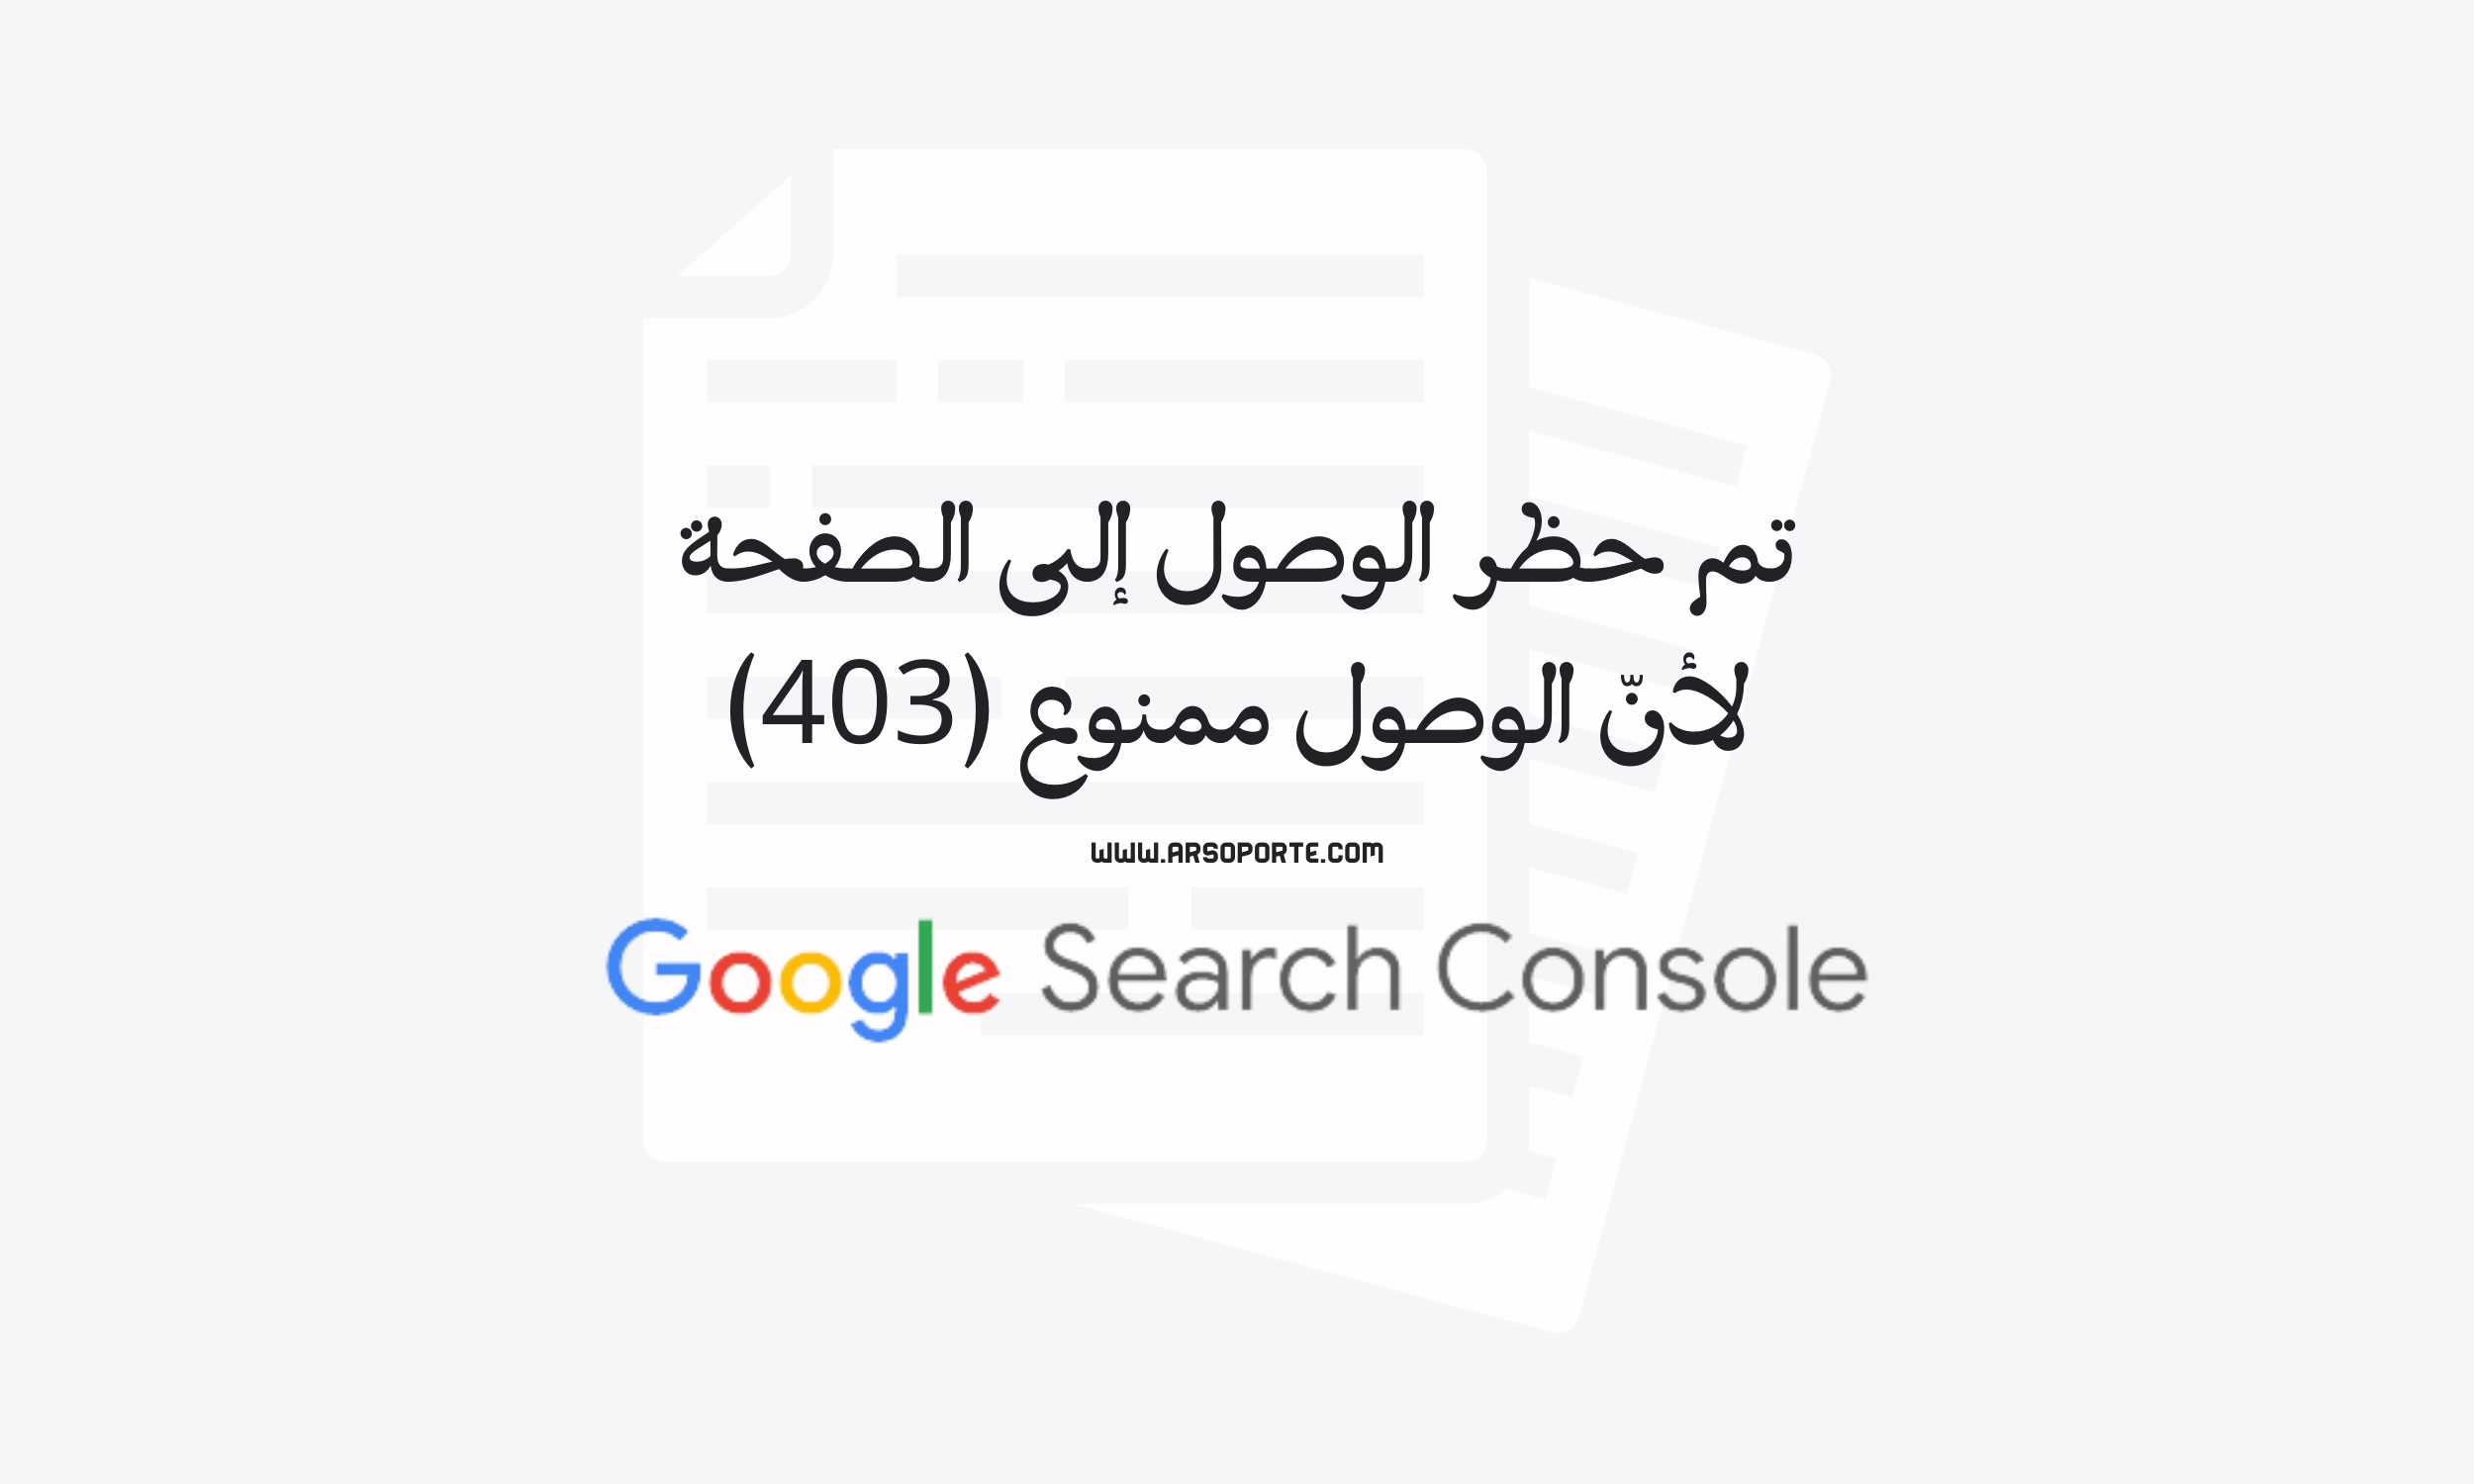 تم حظر الوصول إلى الصفحة لأنّ الوصول ممنوع (403), الصفحات المستبعدة, أدوات مشرفي المواقع جوجل, تغطية الفهرسة